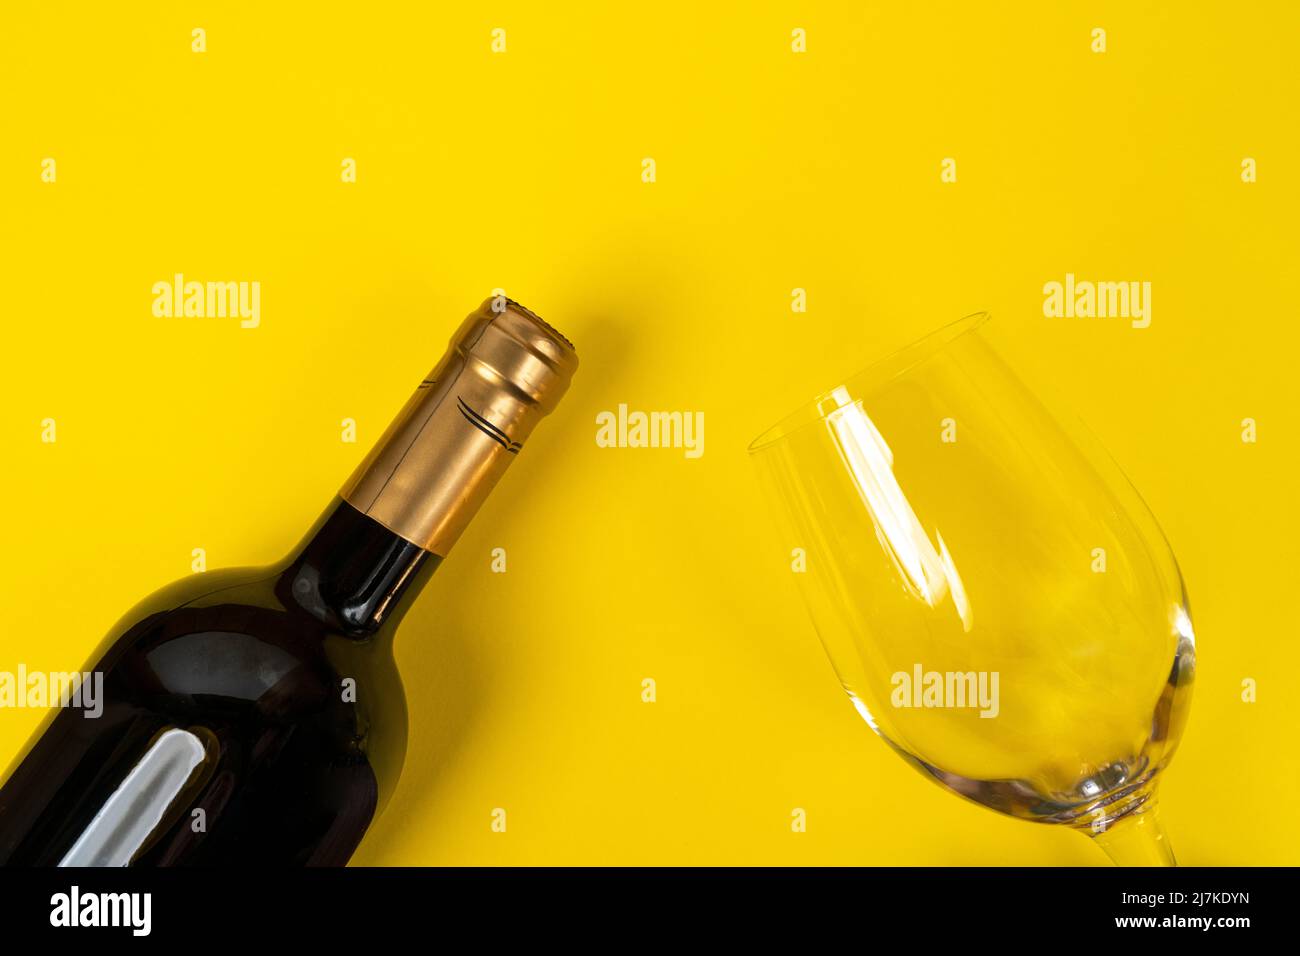 Eine Flasche Rotwein und ein Glas auf einer gelben Oberfläche Stockfoto